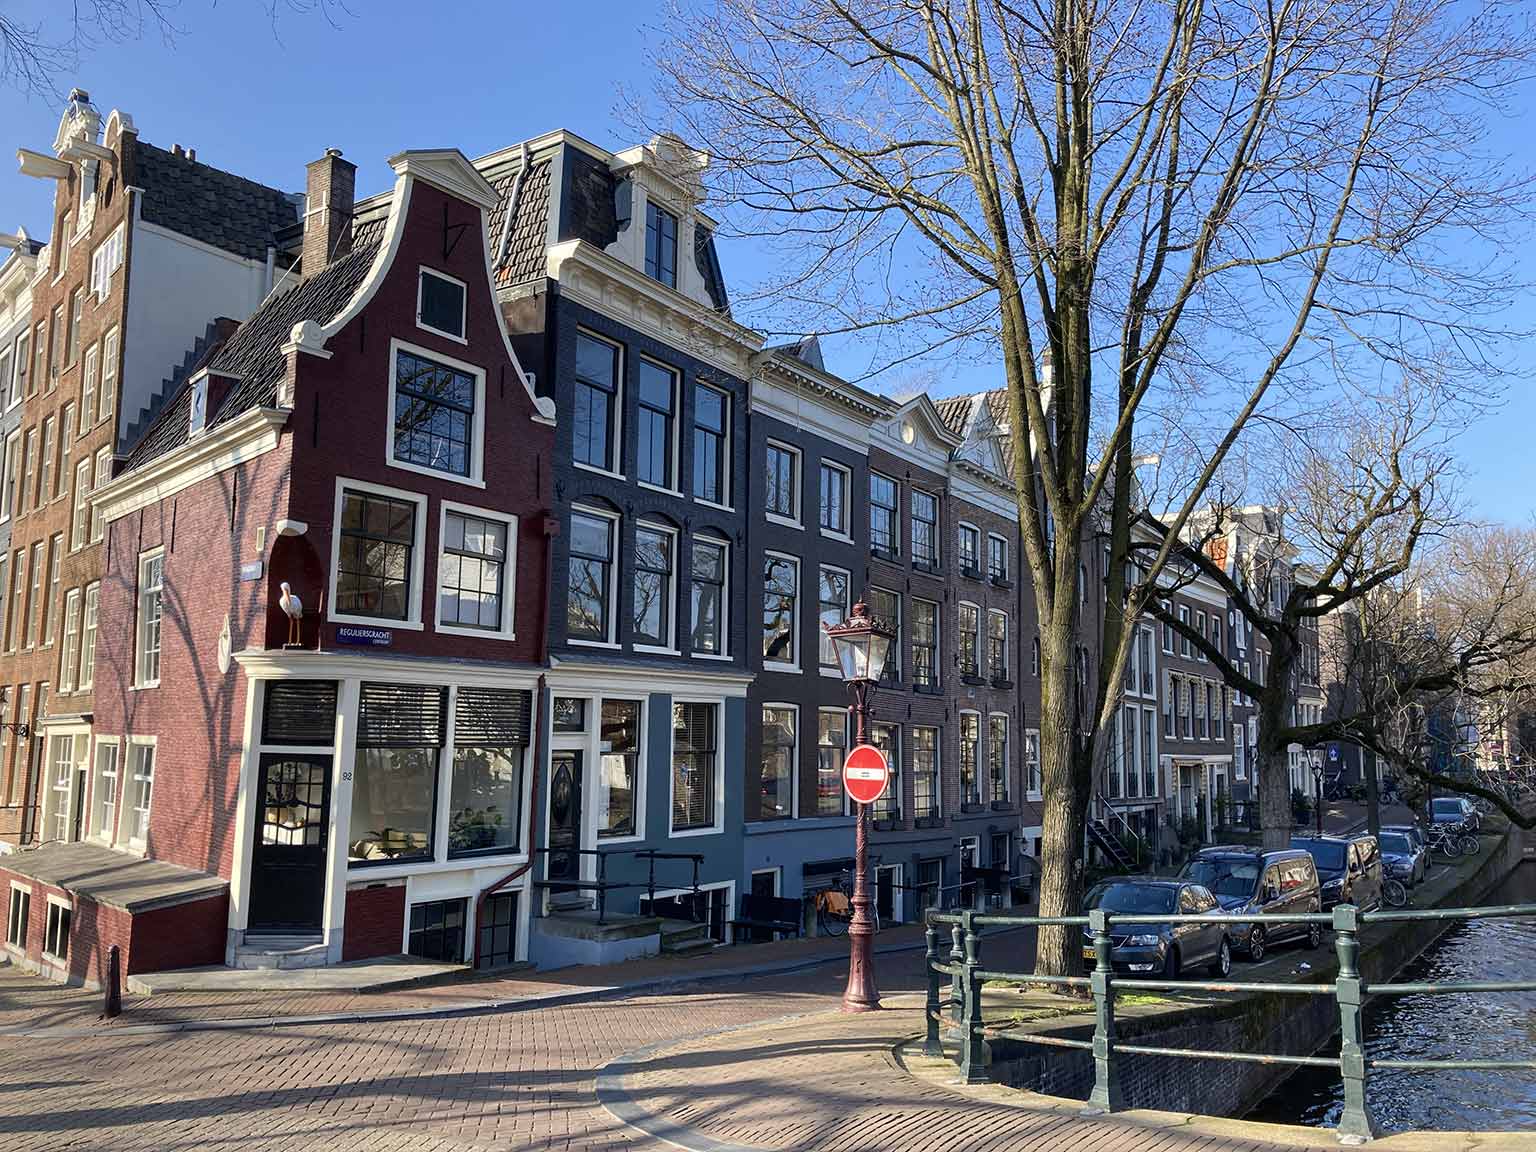 Huis met de Ooievaar, gezien vanaf de hoek van de Prinsengracht en Reguliersgracht, Amsterdam